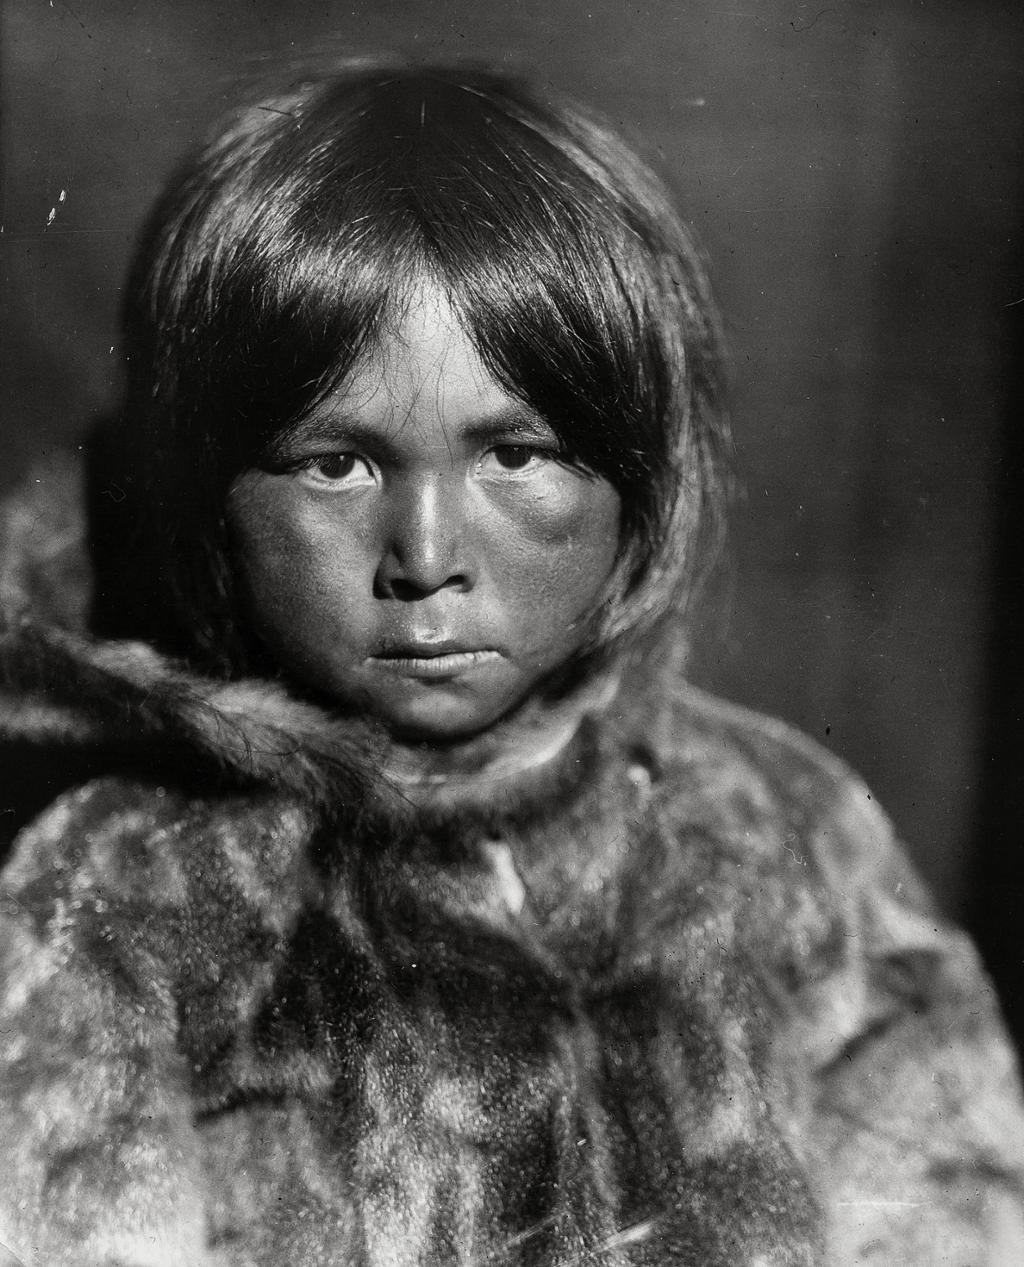 Et barn på kanskje åtte–ni år, med glatt, mørkt hår og midtskill. Det er kledd i ei pelsjakke med hette og ser alvorlig inn i kamera. Stillbilde.